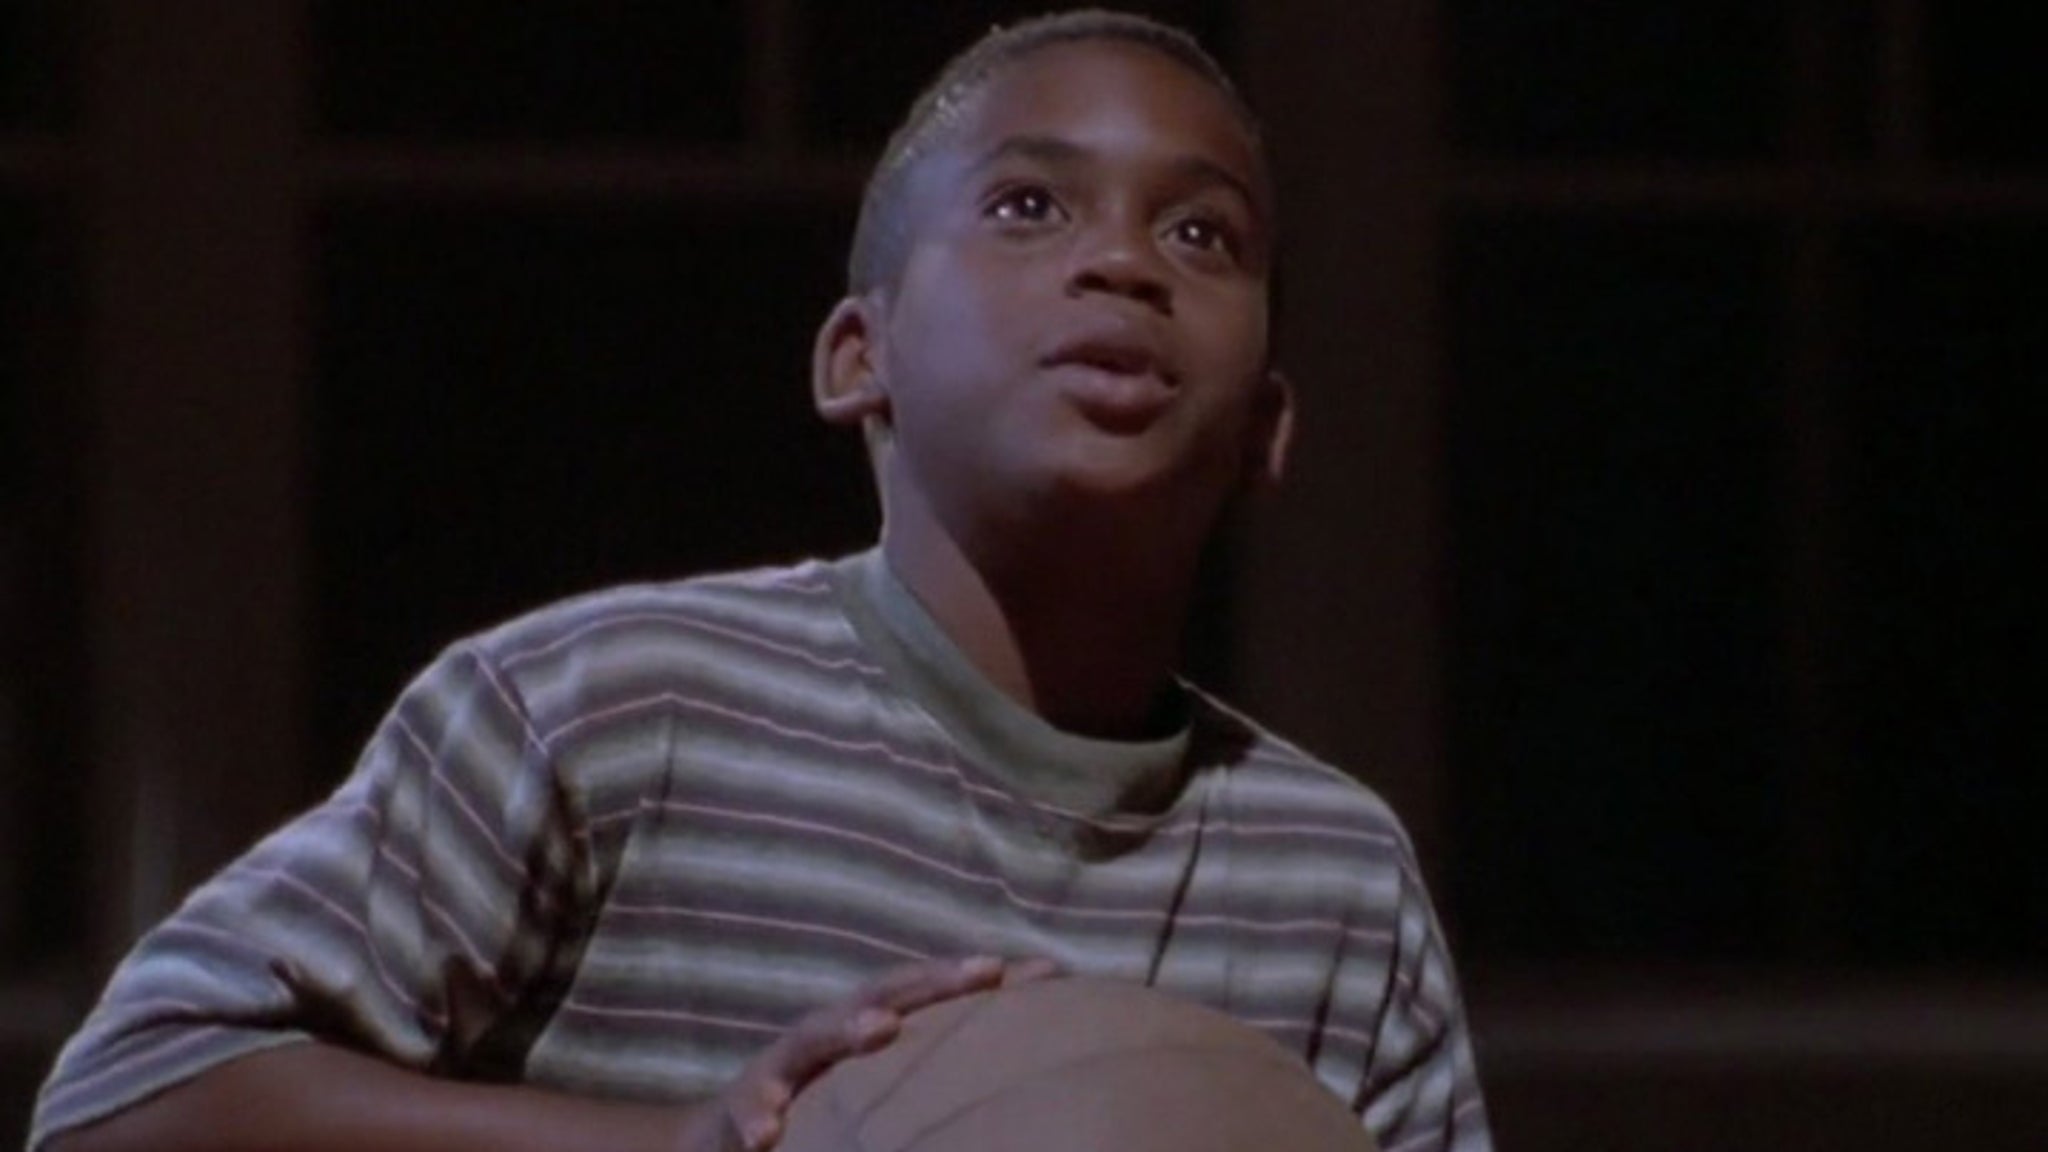 Young Michael Jordan in 'Space Jam 